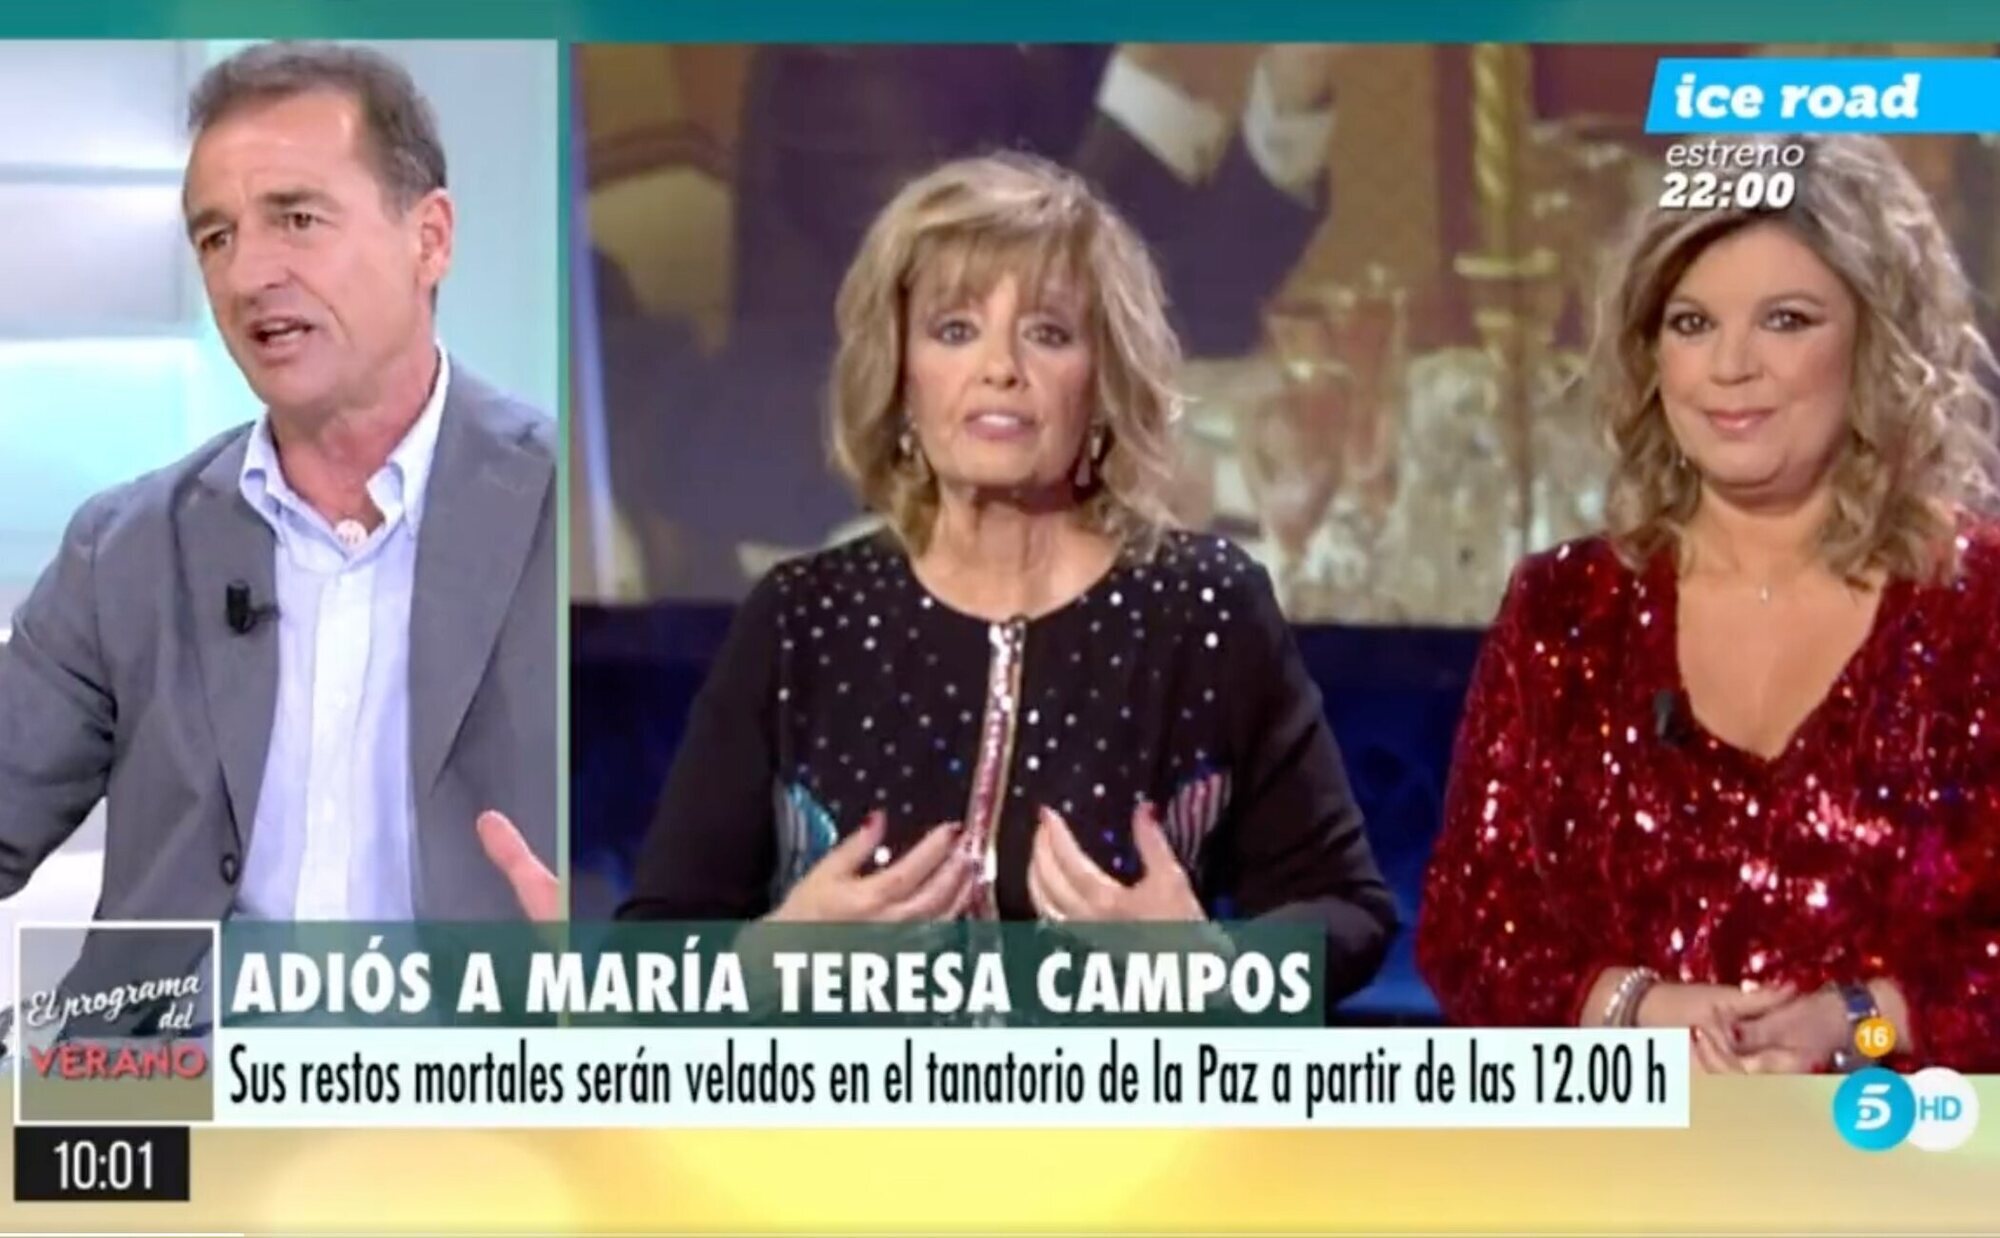 Patricia Pardo frena a Alessandro Lequio ante un comentario fuera de lugar sobre María Teresa Campos el día de su muerte